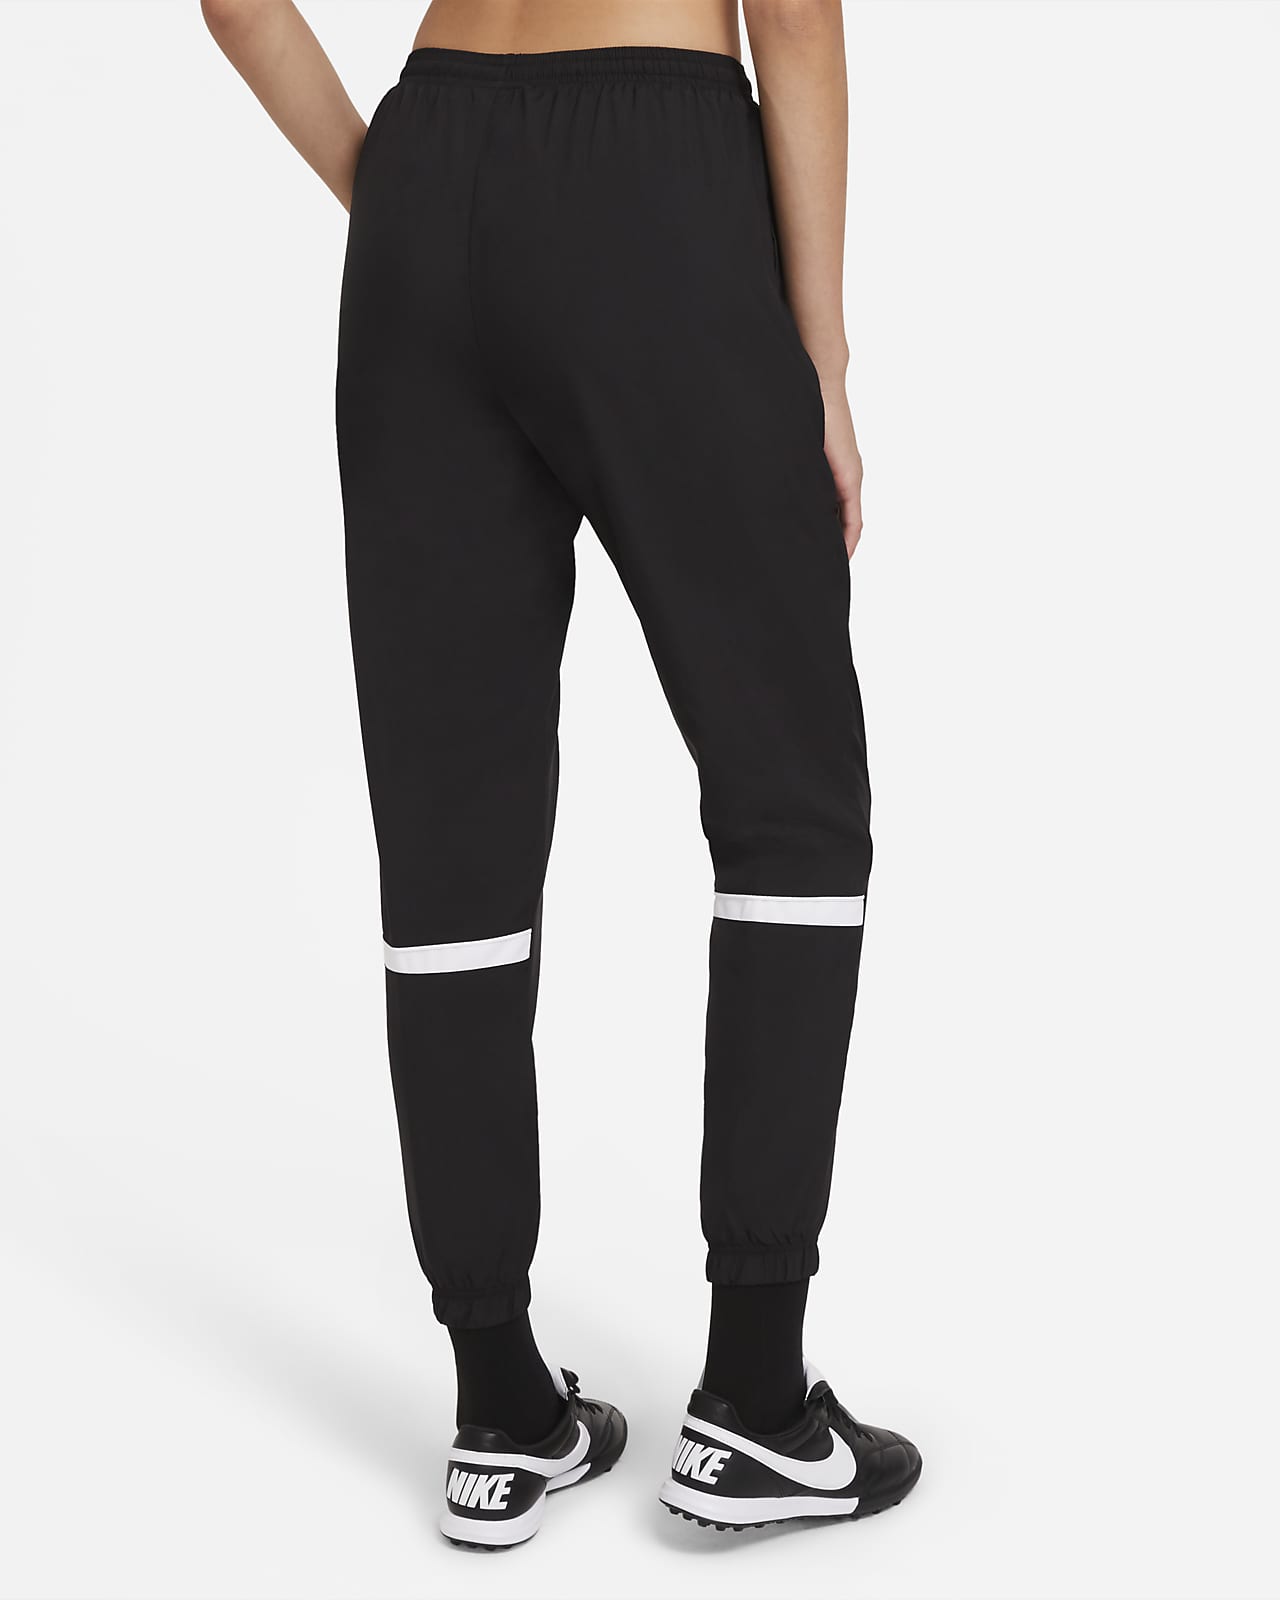 Nike Dri-Fit Get Fit Black Track Pants Women